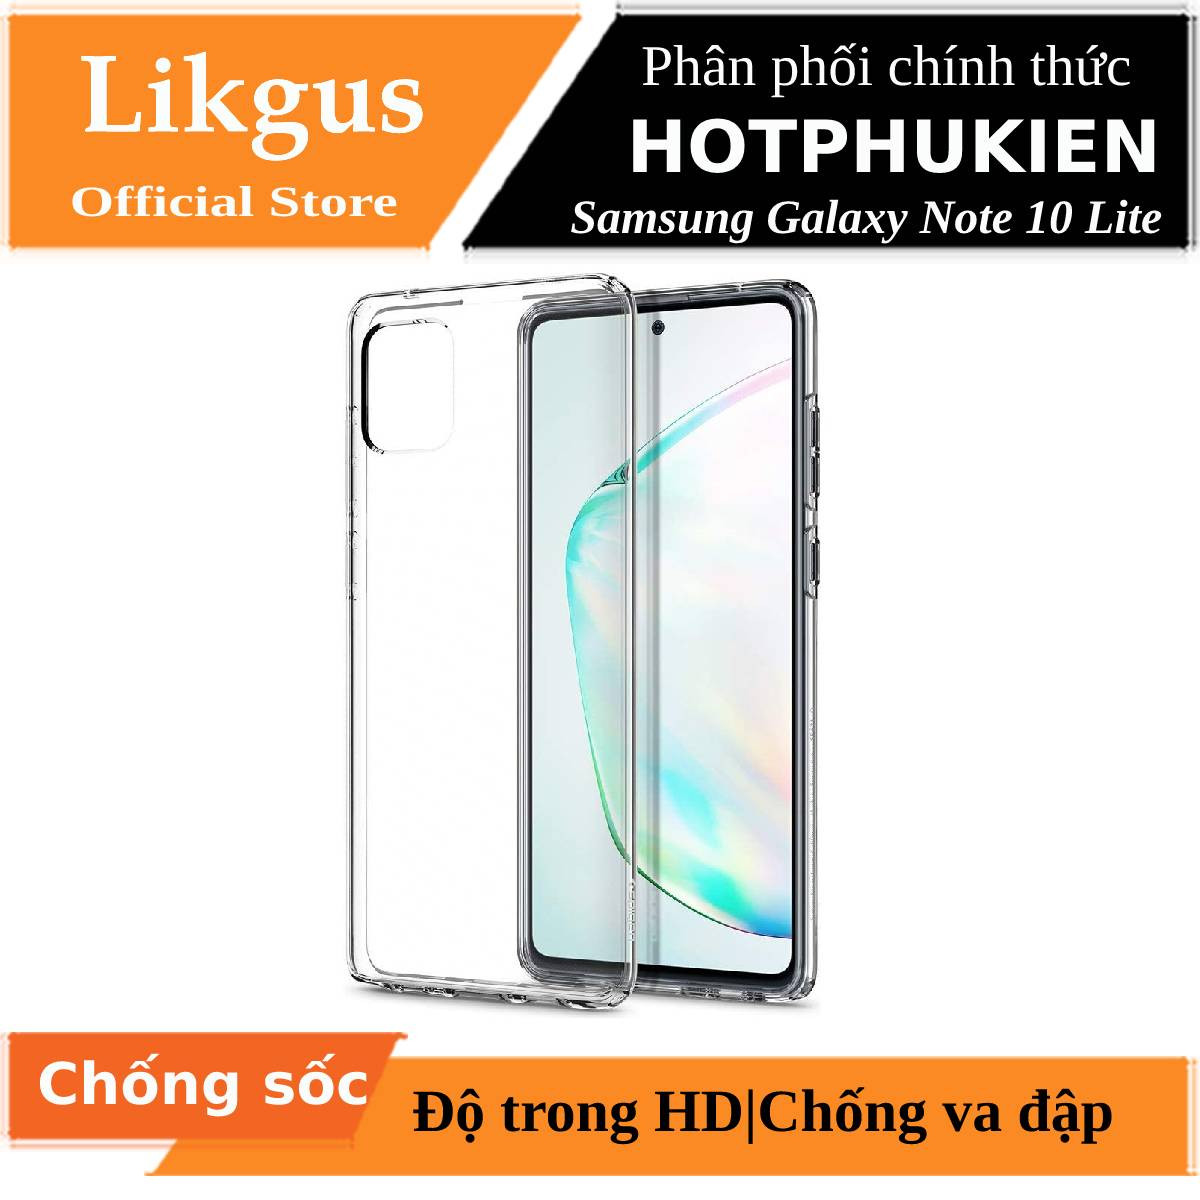 Ốp lưng chống sốc trong suốt cho Samsung Galaxy Note 10 Lite hiệu Likgus Crashproof